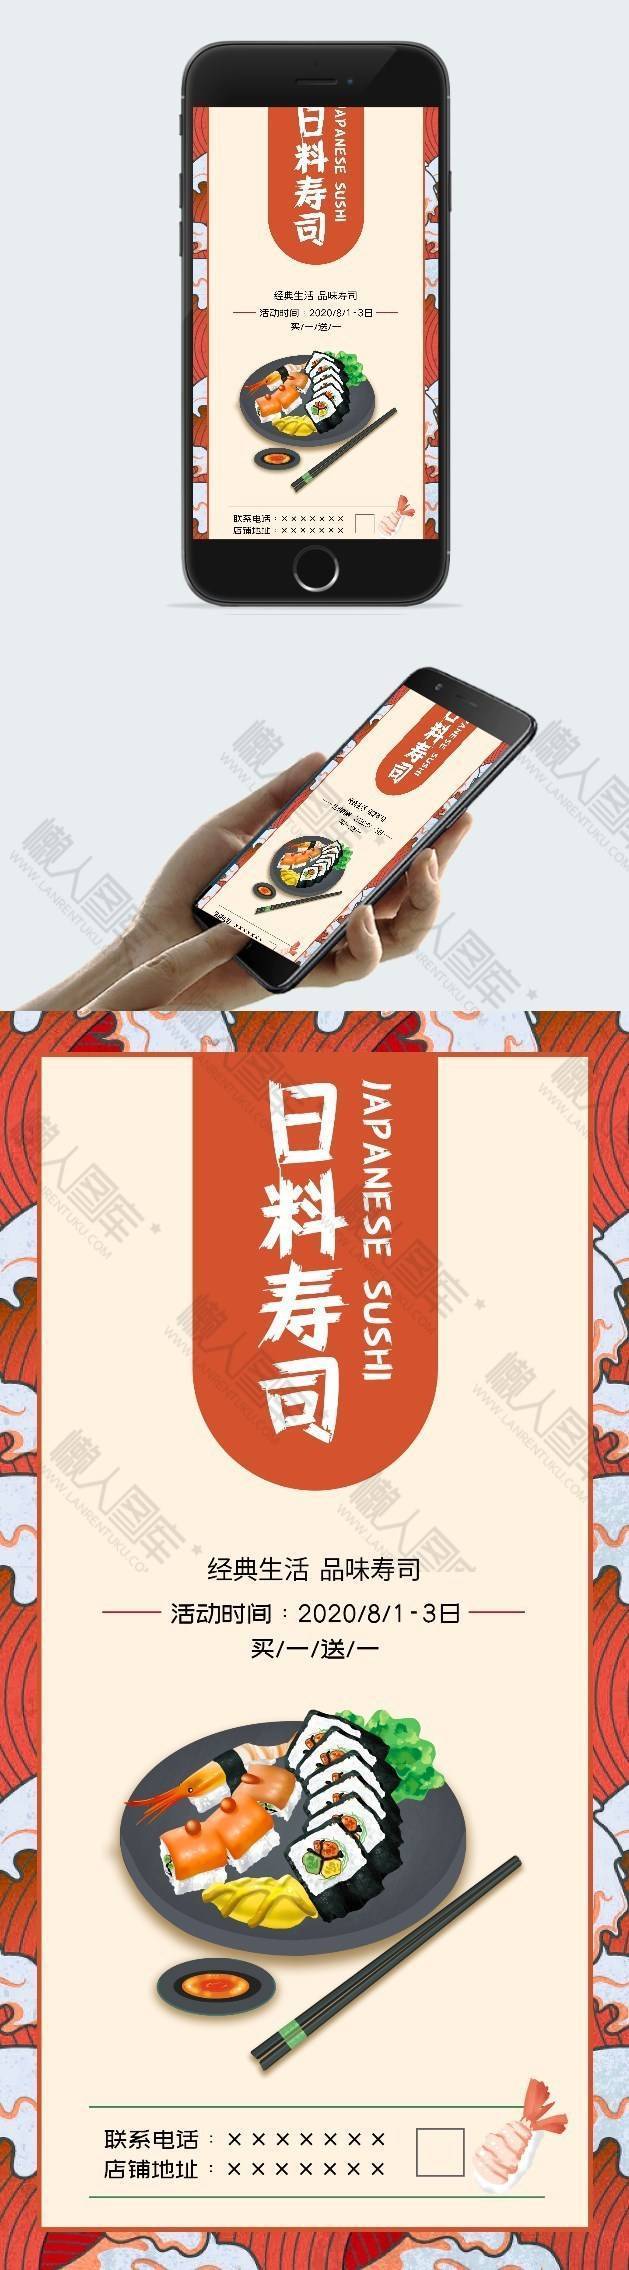 日式寿司店促销宣传海报图片